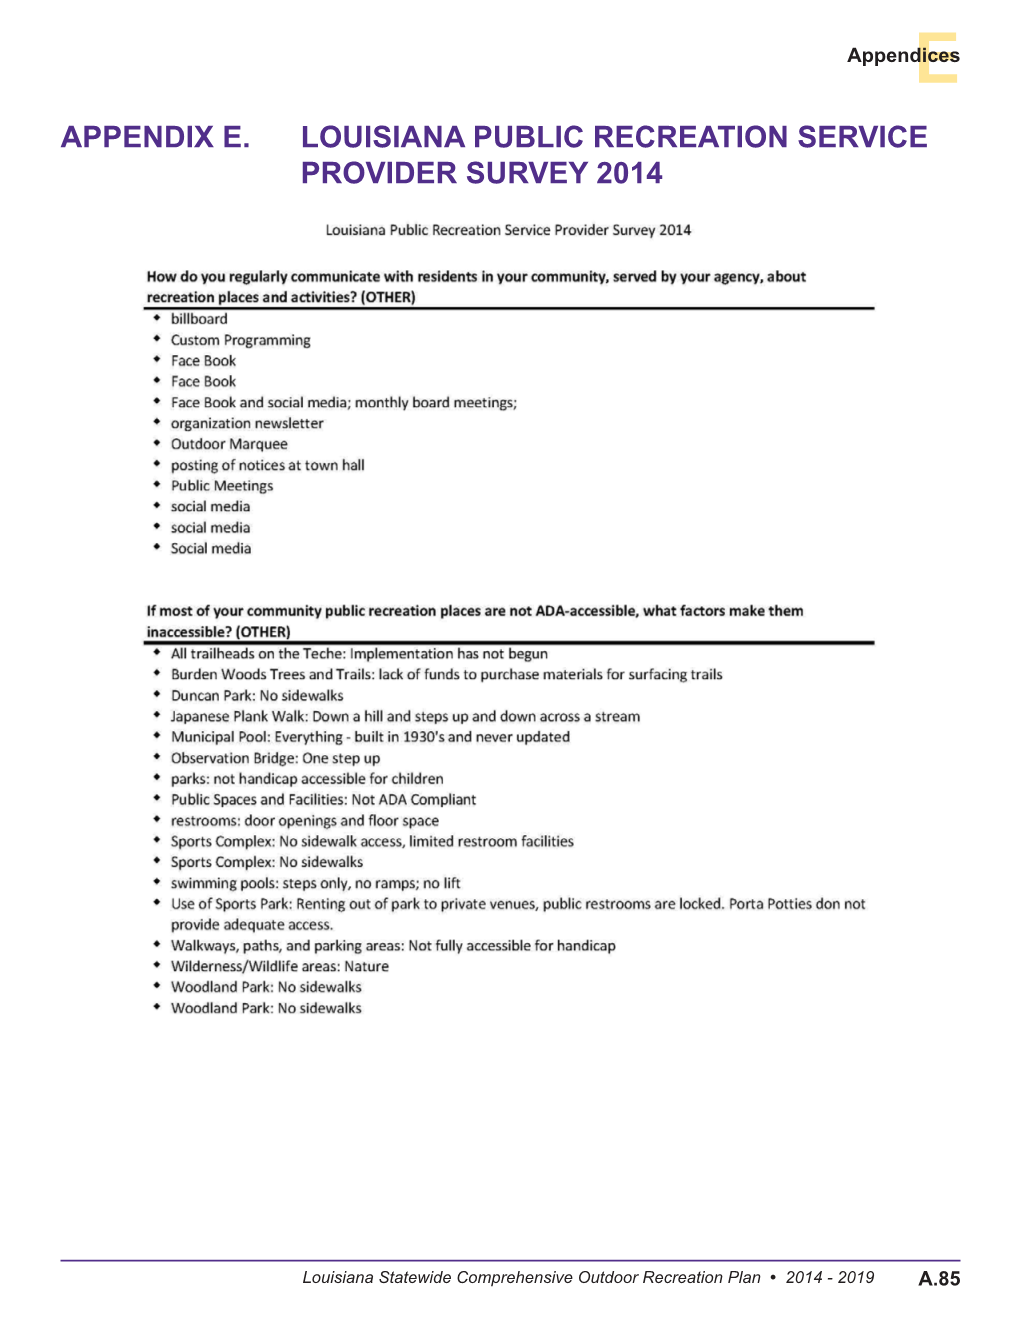 Appendix E. Louisiana Public Recreation Service Provider Survey 2014